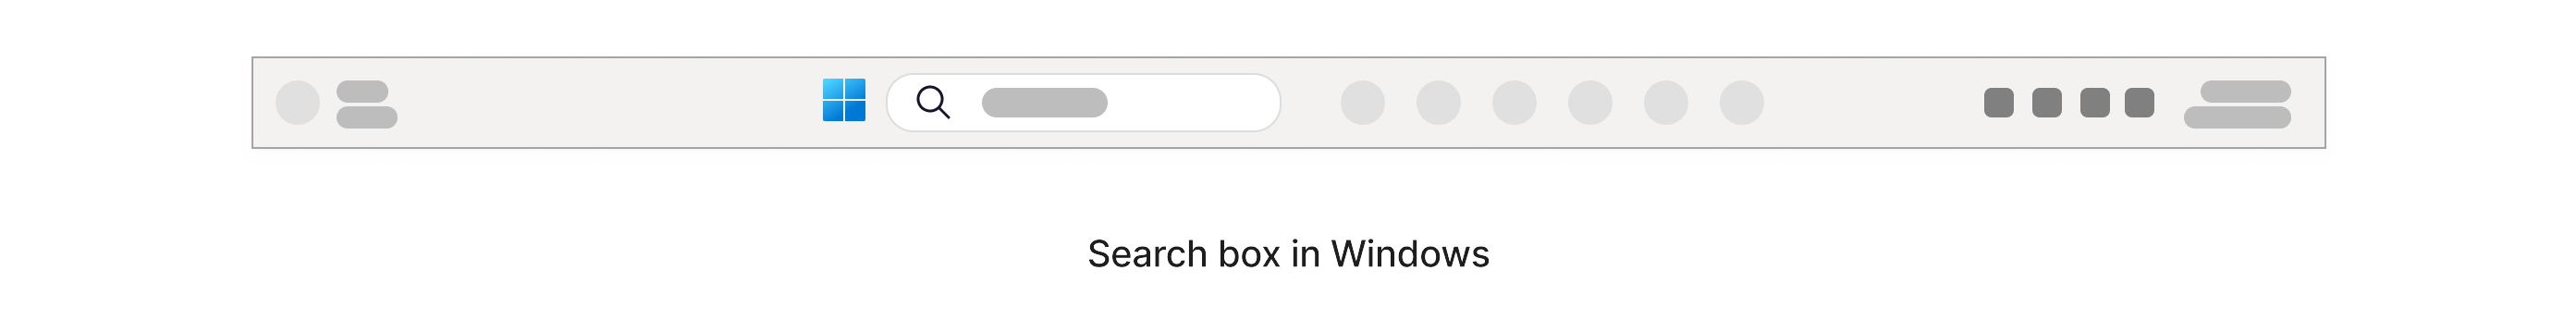 Поле пошуку з піктограмою збільшувального зображення в ньому розташовано на панелі завдань Windows у нижній частині екрана.